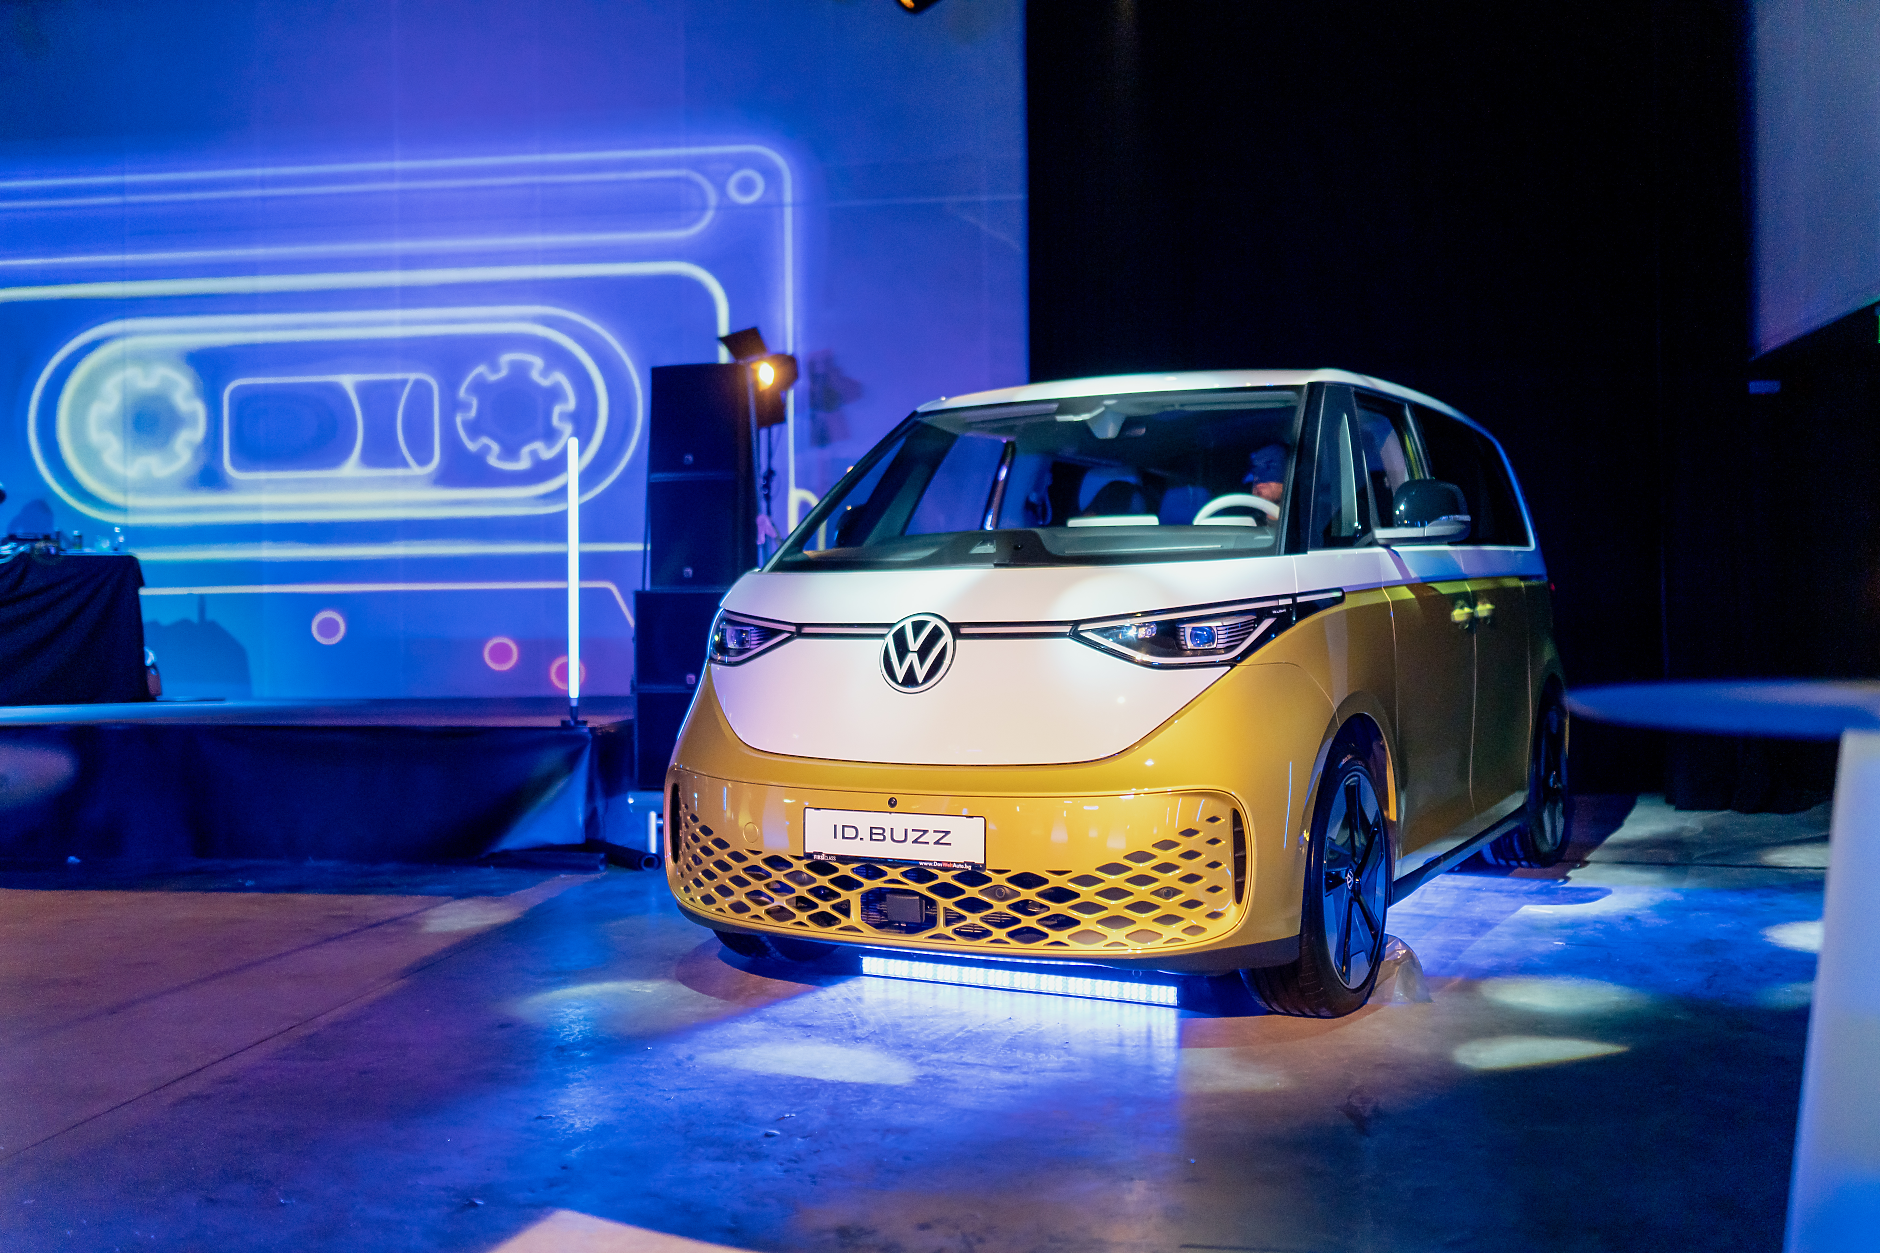 Електрическият бус ID.Buzz на Volkswagen с официална премиера в България